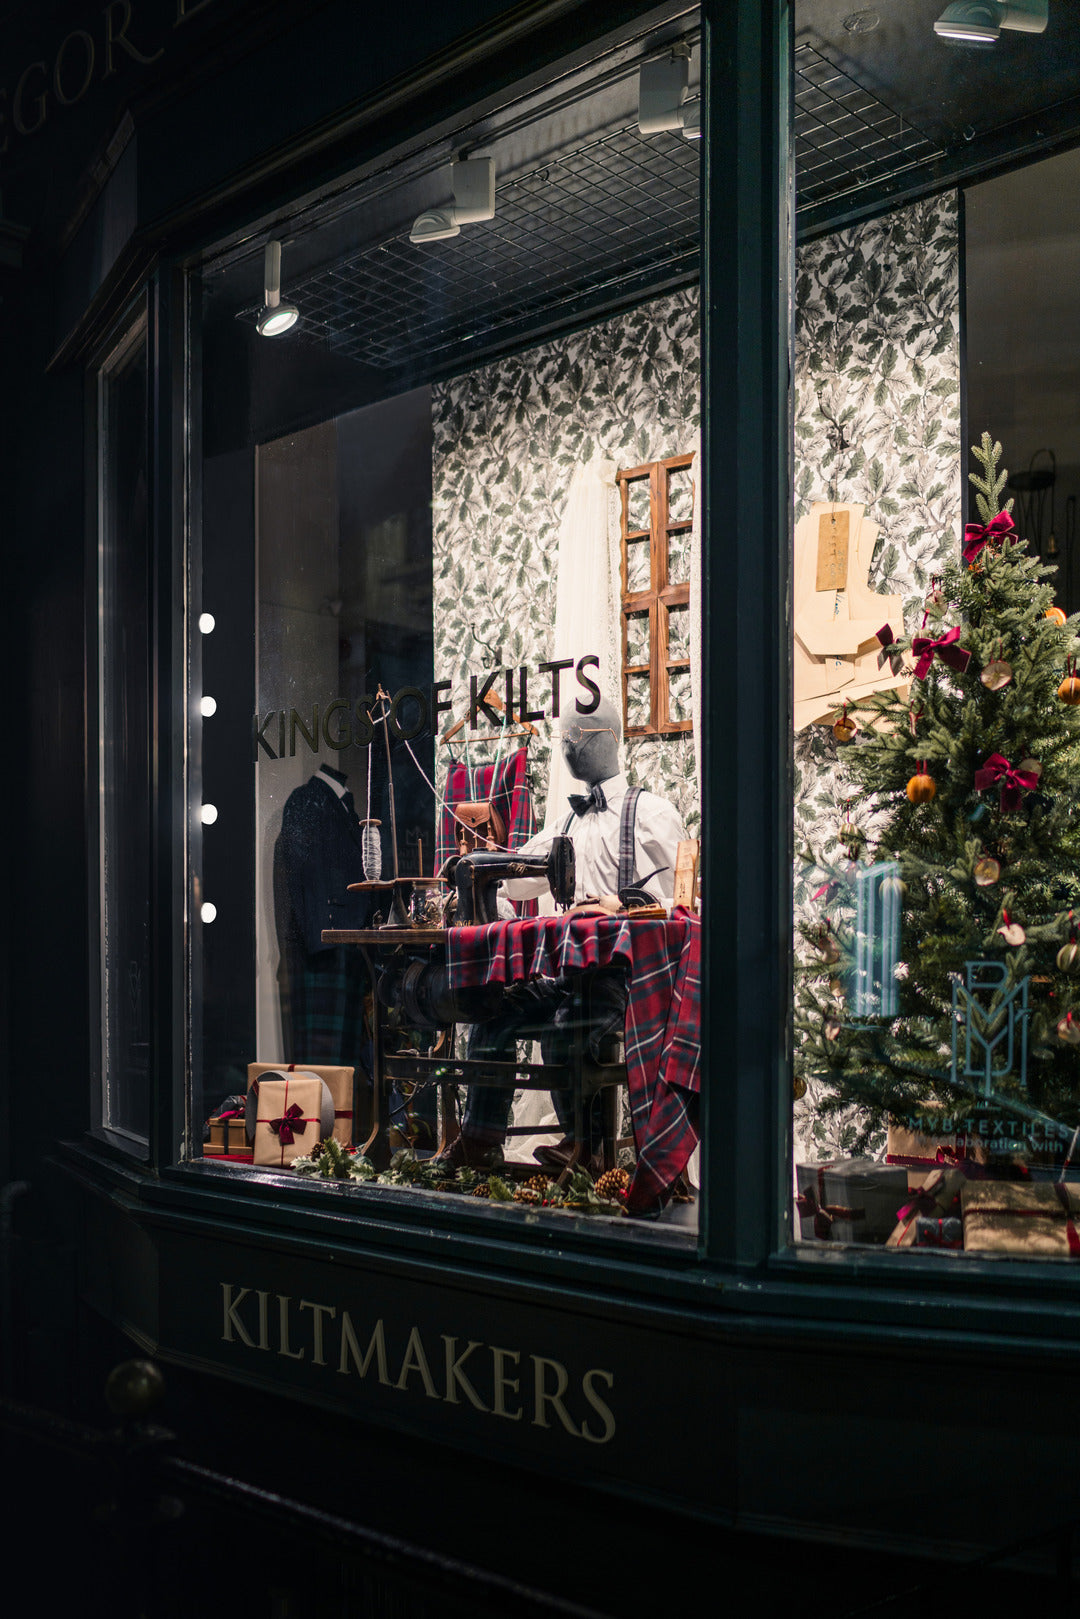 Bath Street Kilt Shop